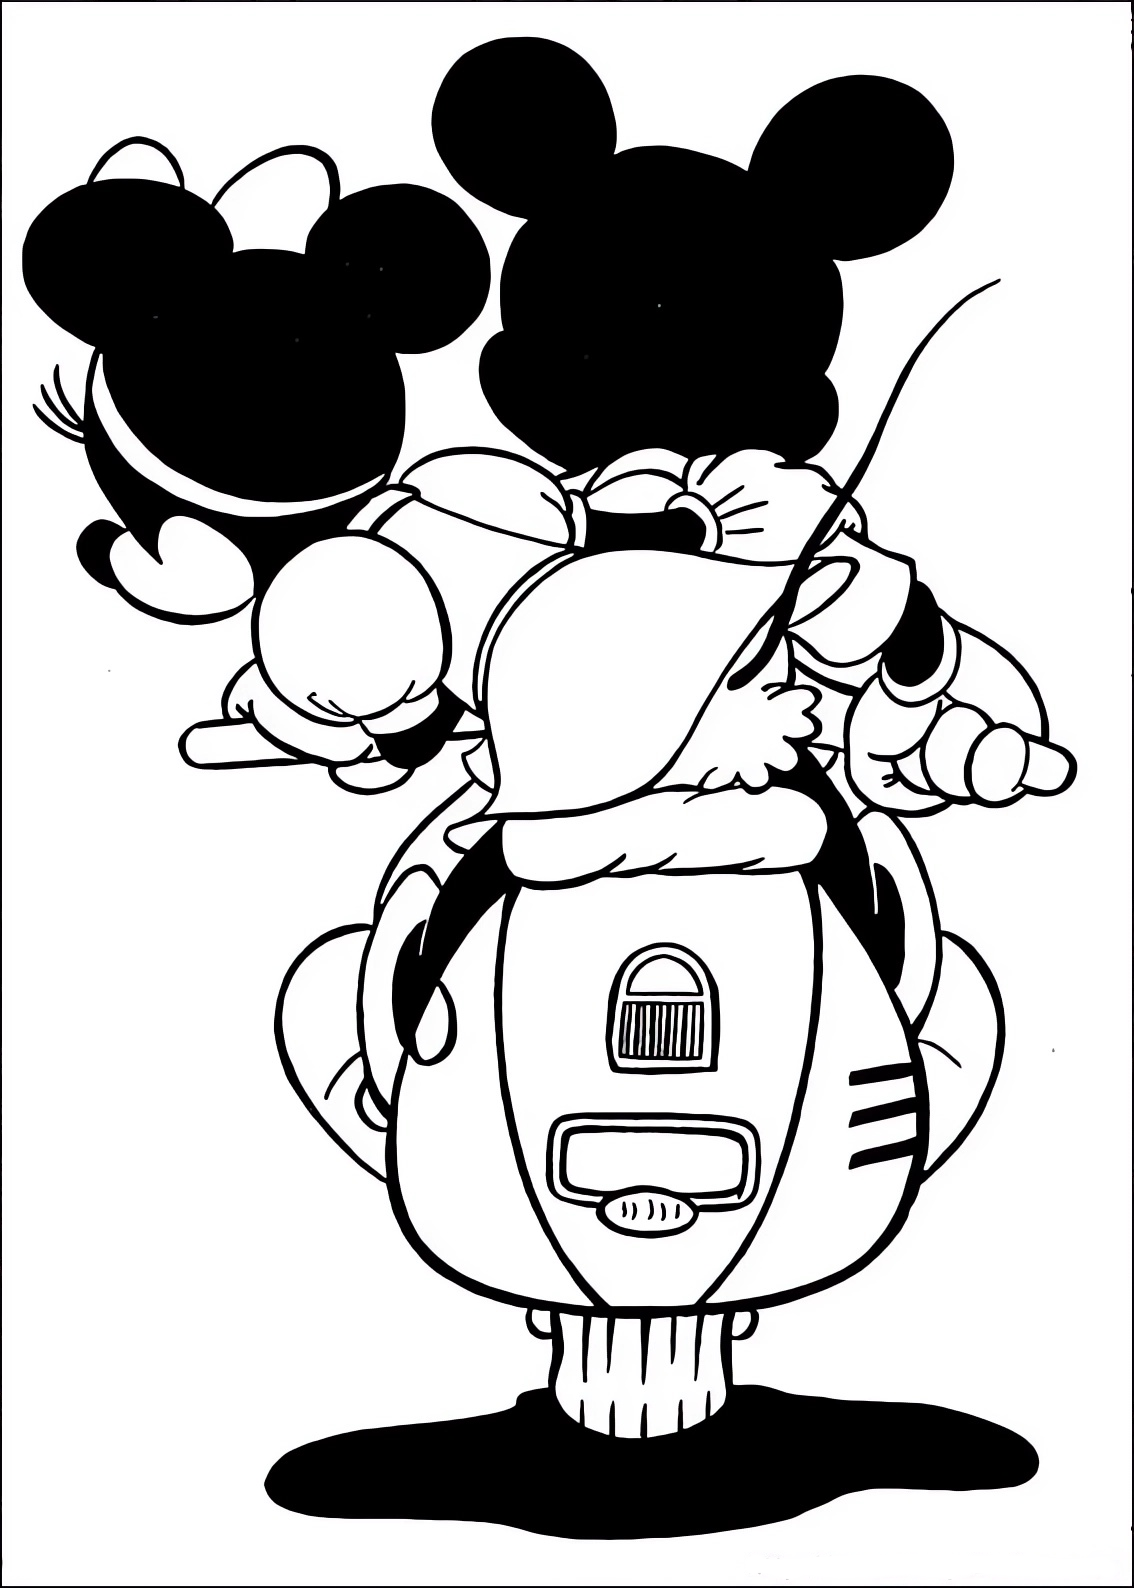 Disegno da colorare di Minnie e Topolino (Mickey Mouse) sullo scooter